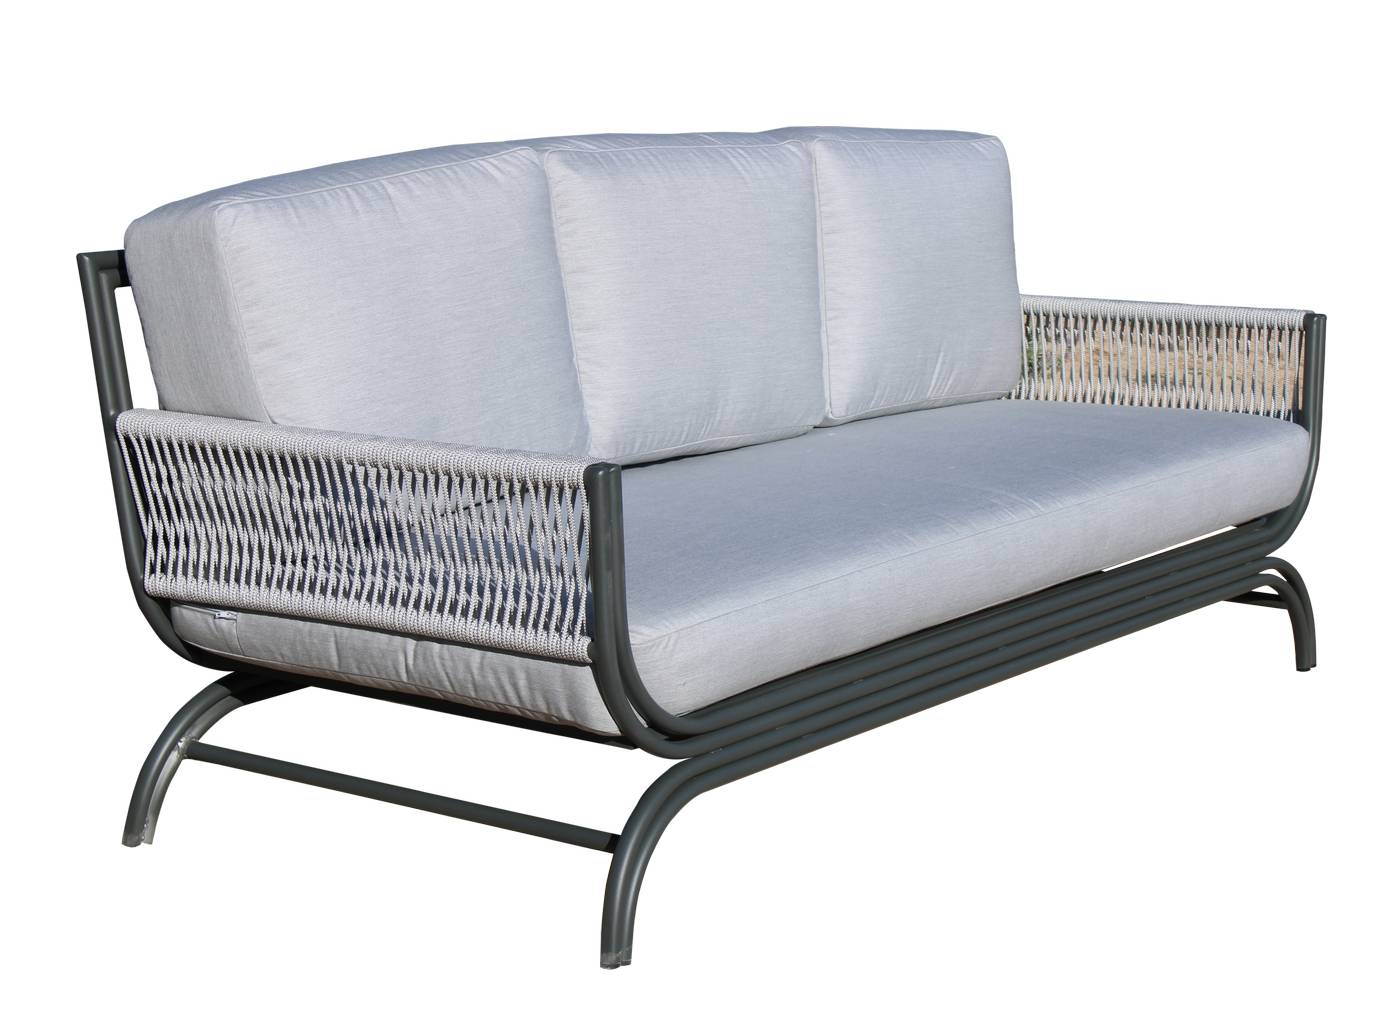 Set Aluminio Saona-8 - Conjunto de alumino y cuerda: sofá de 3 plazas + 2 sillones + 1 mesa de centro. Colores: blanco, antracita, marrón, champagne o plata.